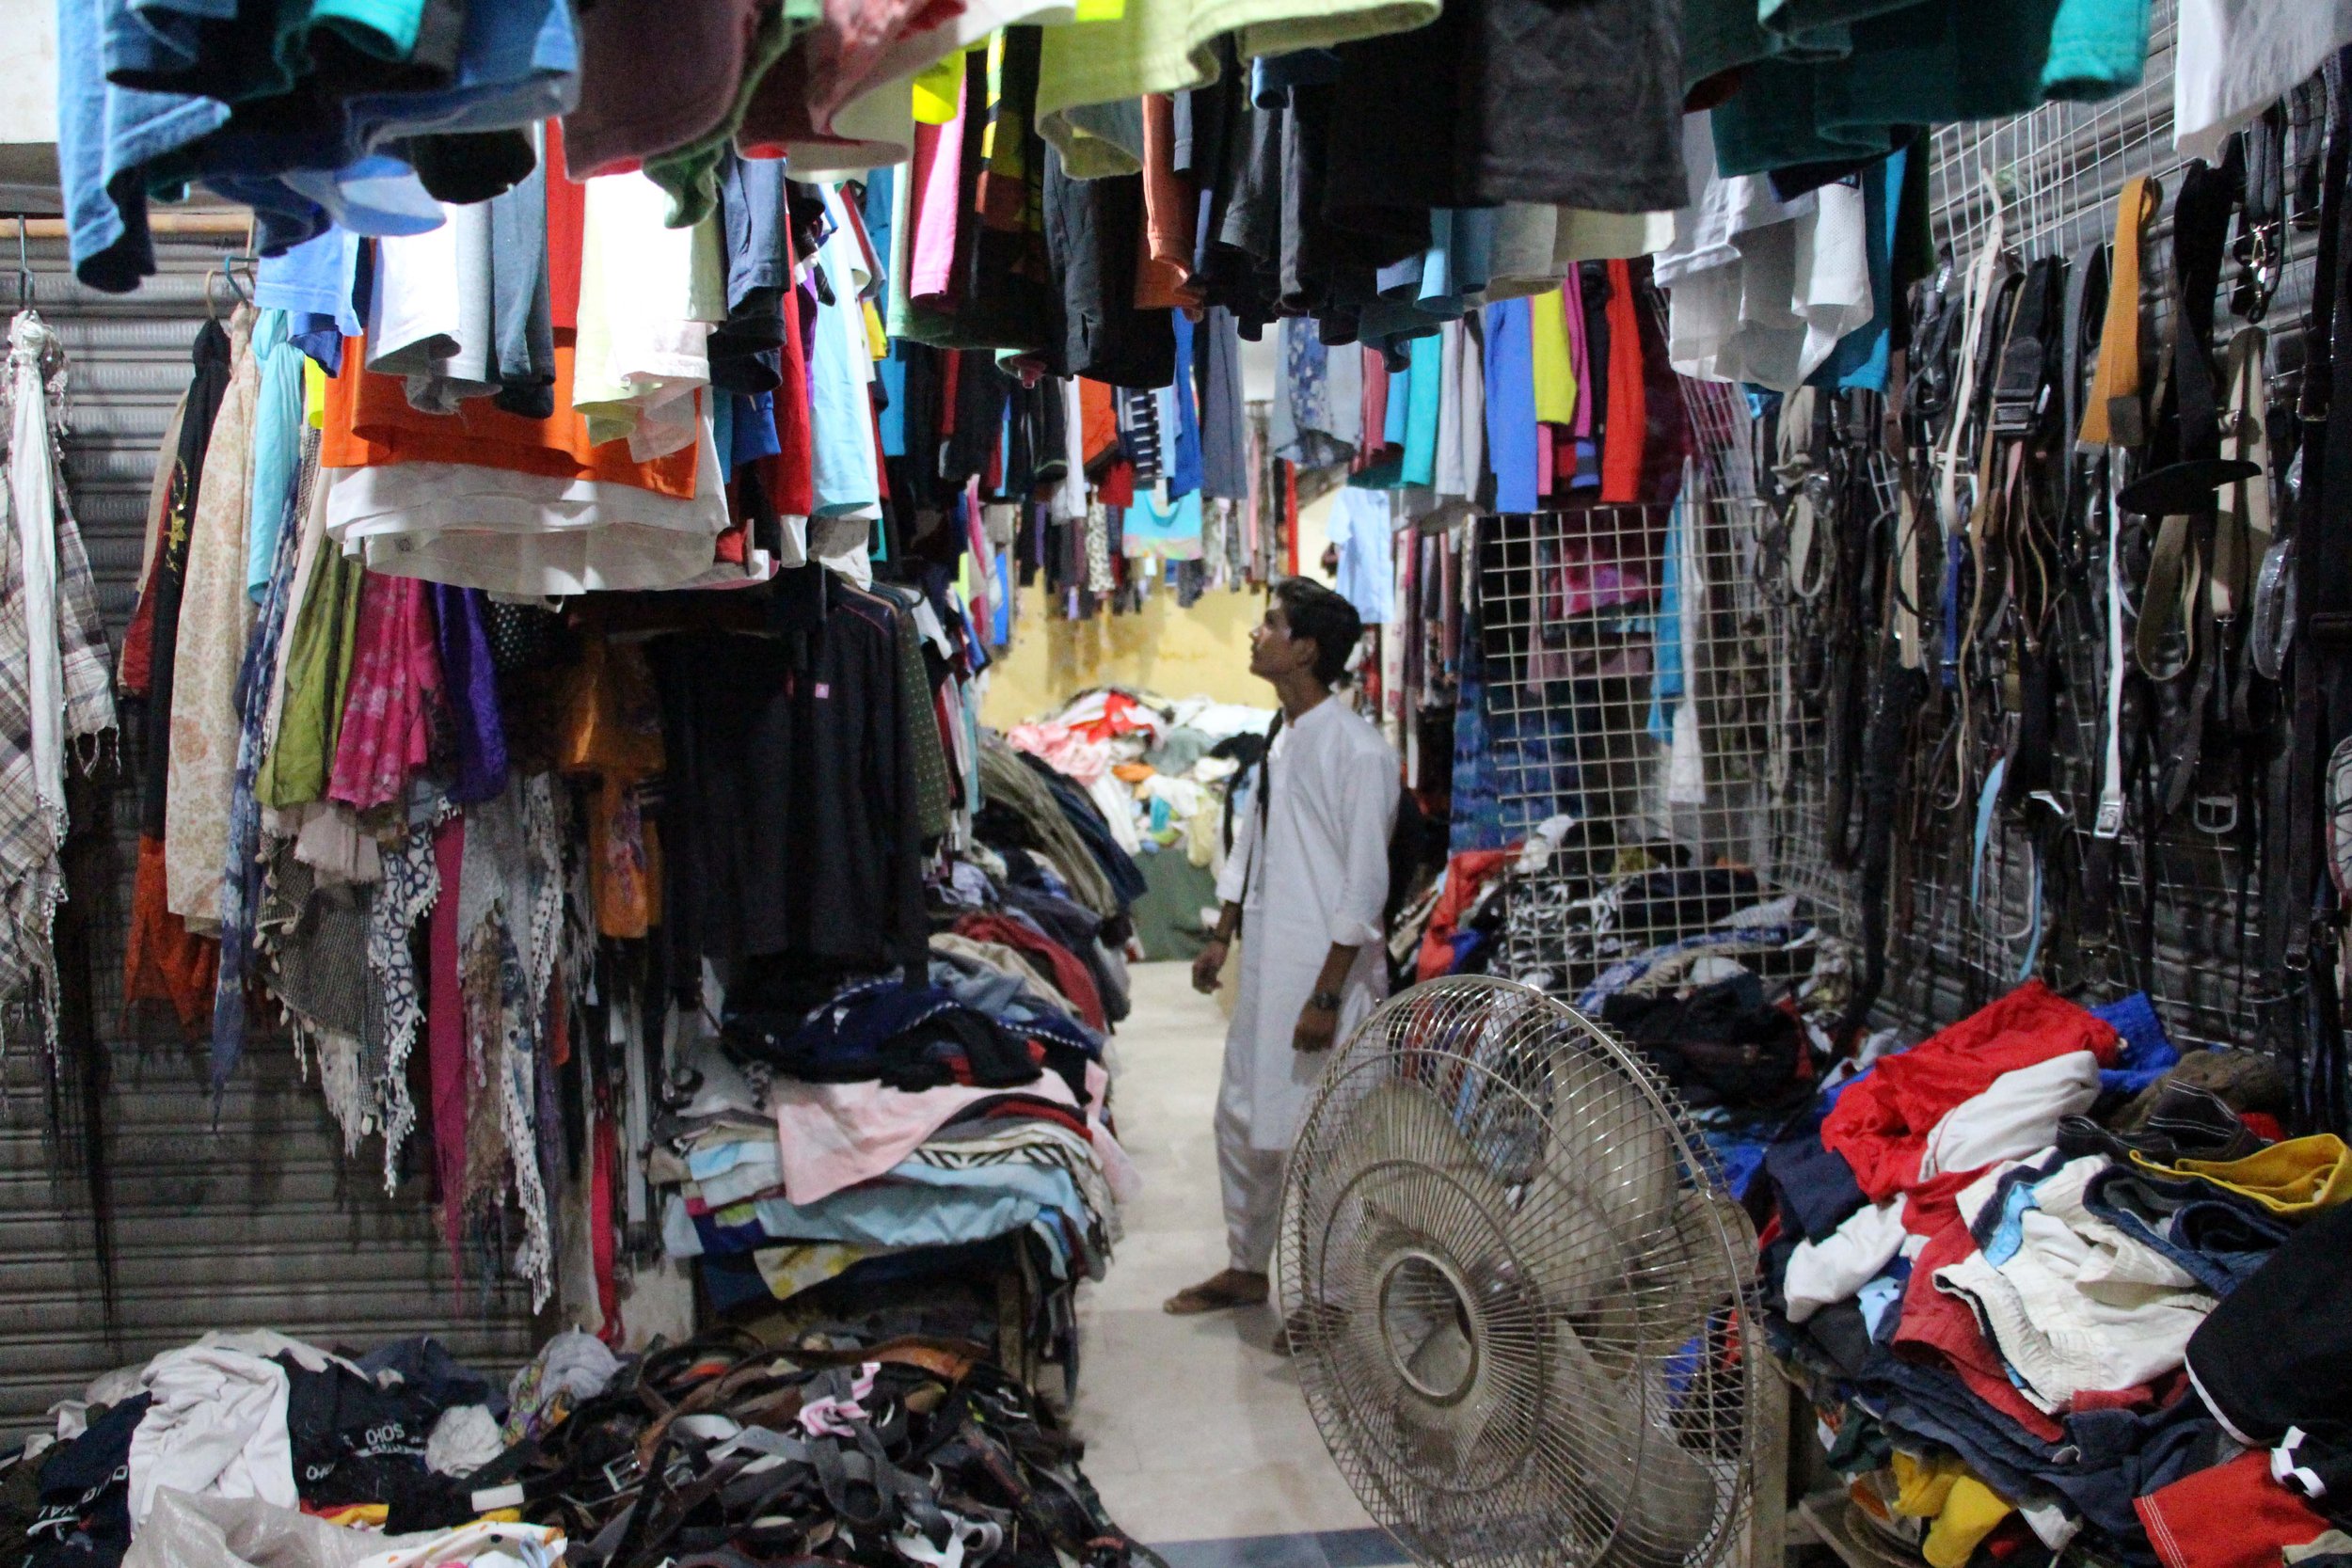  V bližini železniške proge živijo predvsem delavci iz nižjega razreda, ki kupujejo obleke po najugodnejših cenah. Foto: Adil Jawad 